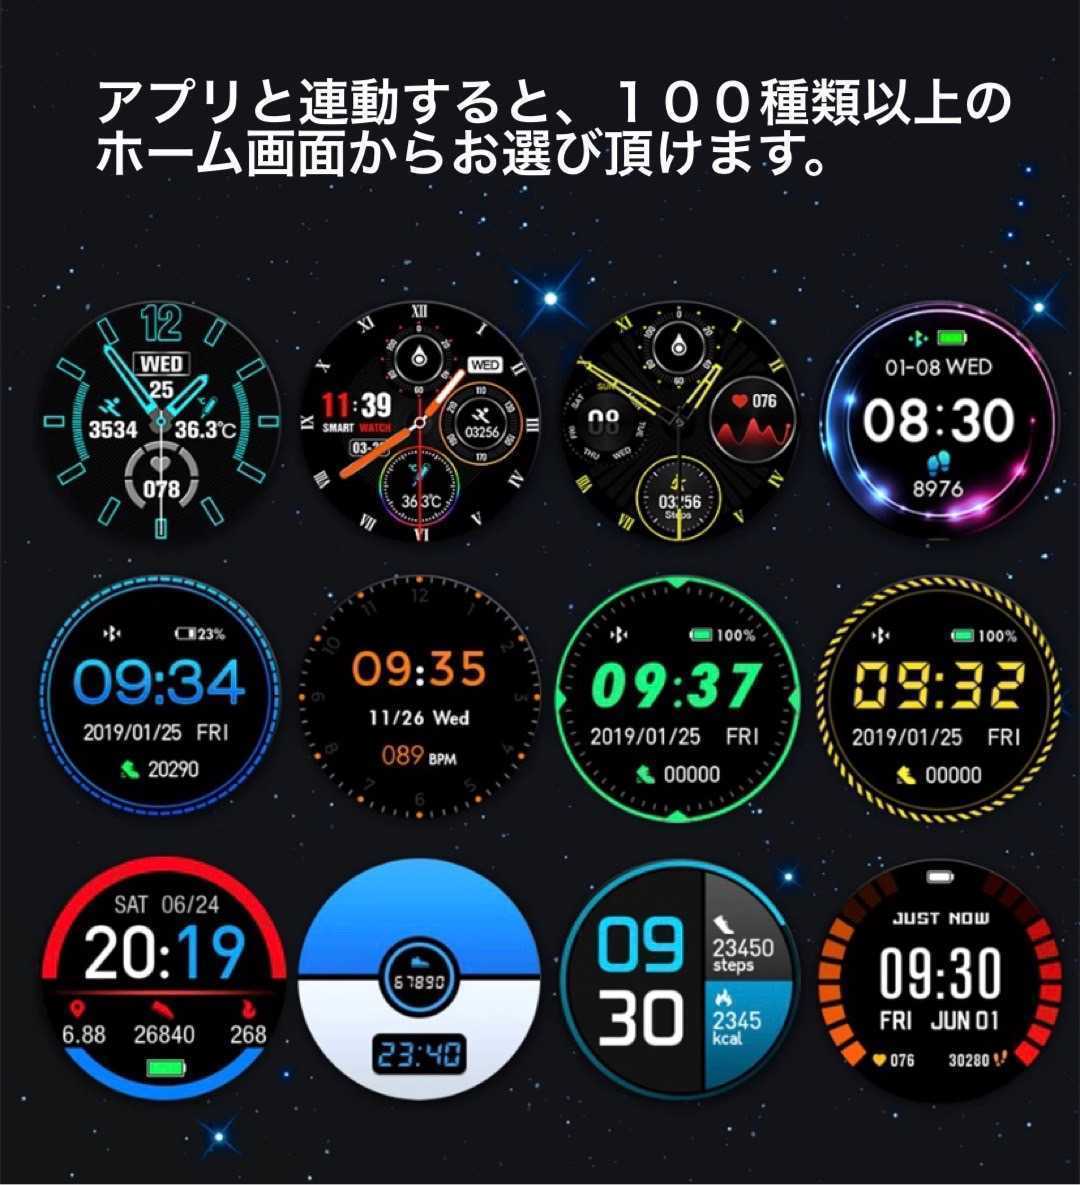 1 иен ~ внутренний на следующий день отправка! 2022 год новейший версия смарт-часы LIGE температура тела мониторинг функция сердце . кровяное давление . число сон сообщение сообщение Android iPhone чёрный черный 